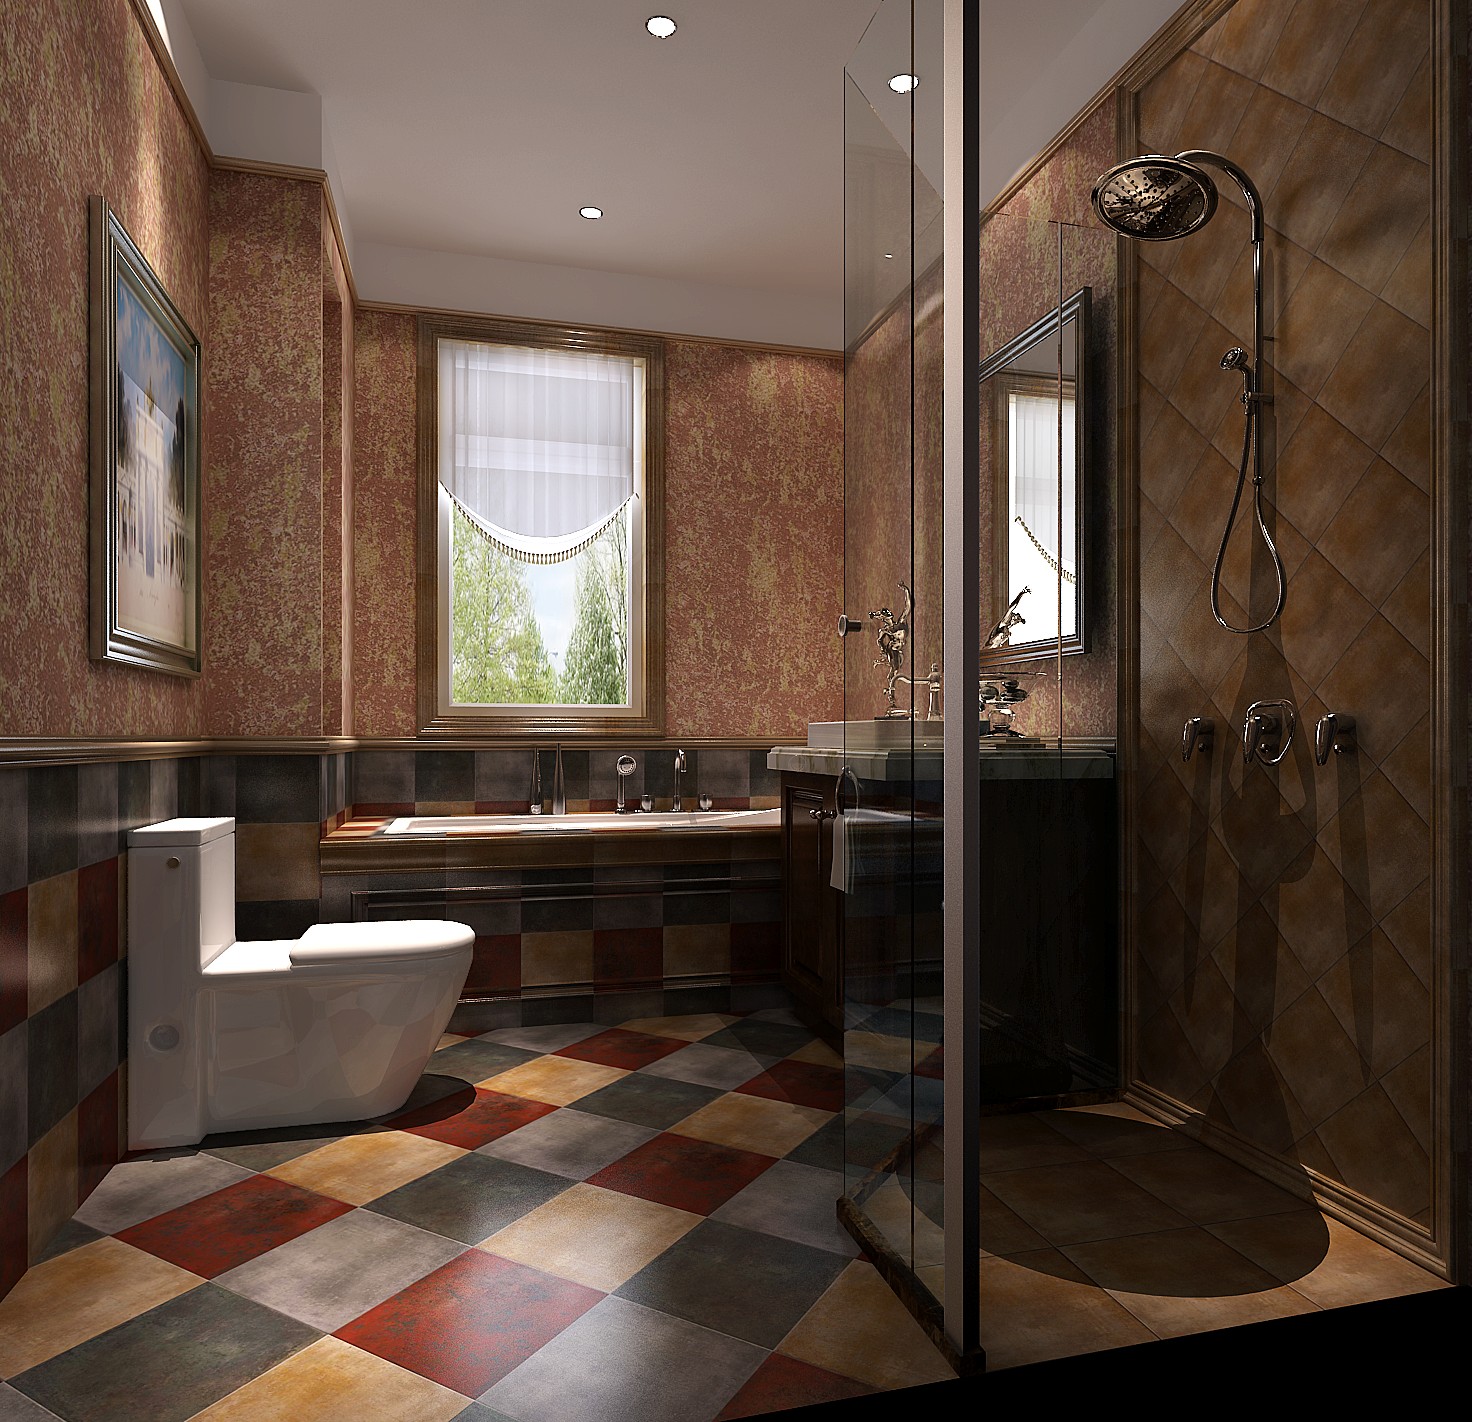 五居 托斯卡纳 公寓 卫生间图片来自高度国际装饰宋增会在鲁能七号院174平米托斯卡纳的分享